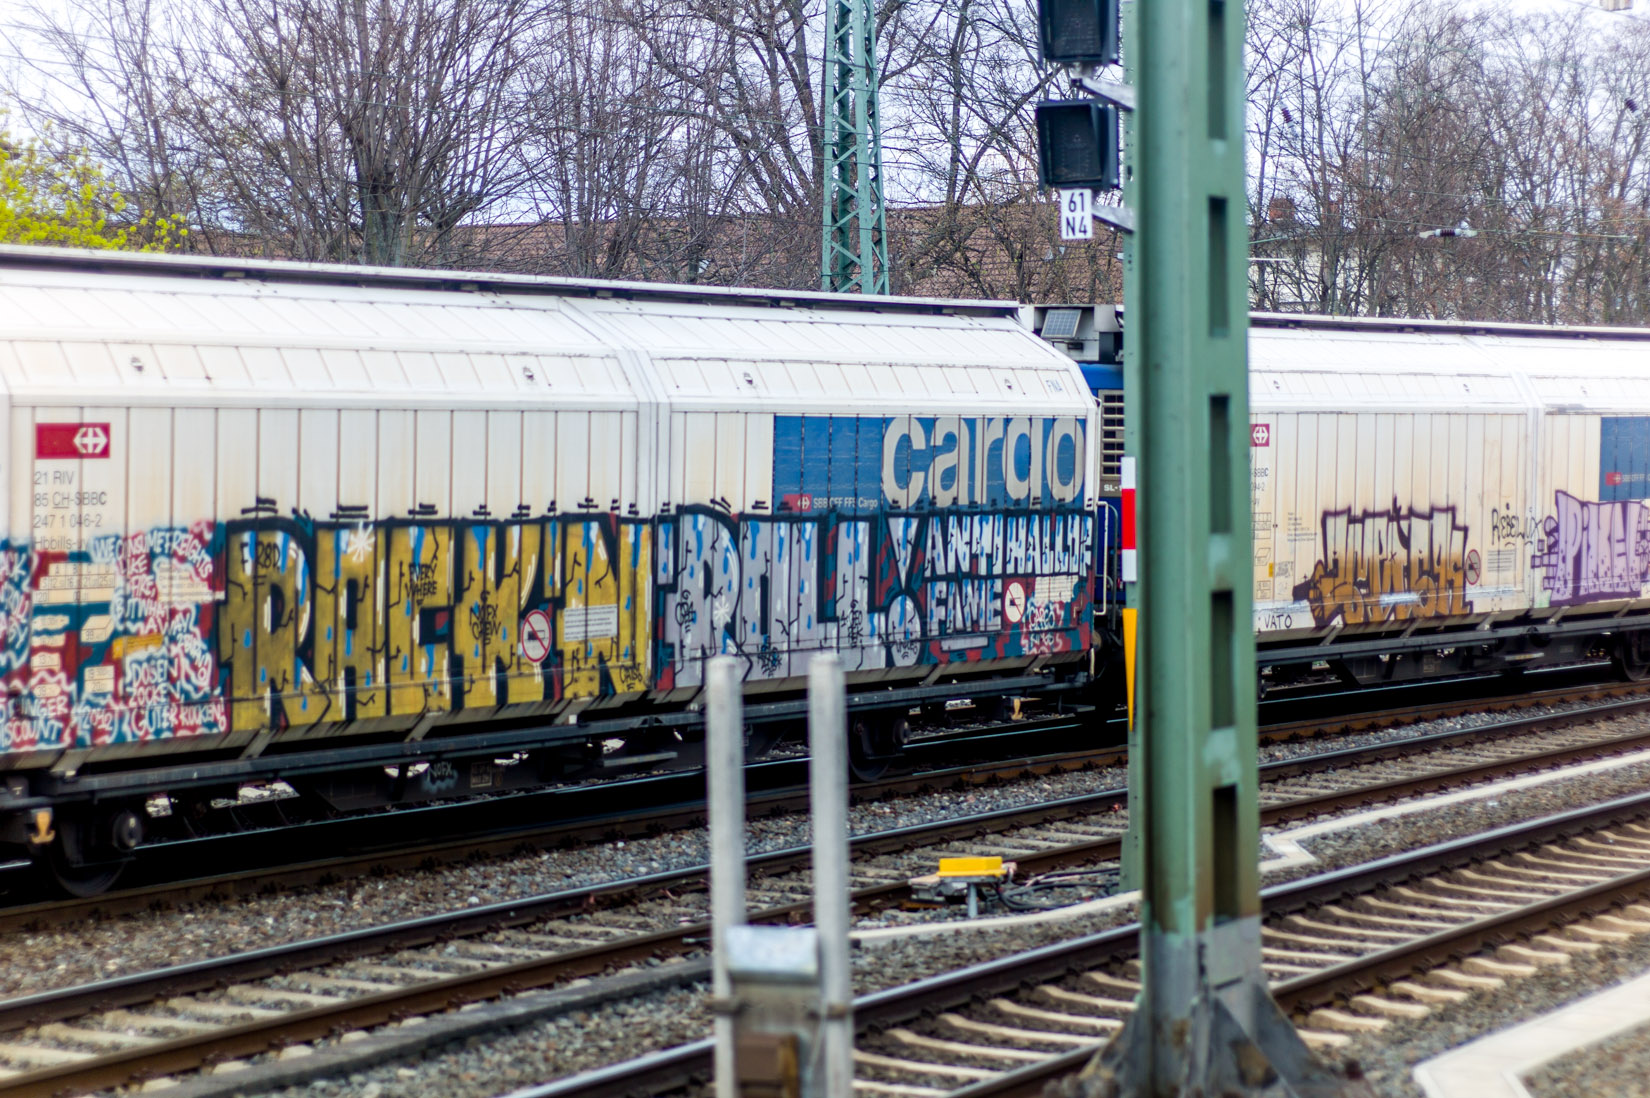 Frankfurt_Graffiti_Gallus Warte_2014-03 (42 von 45)